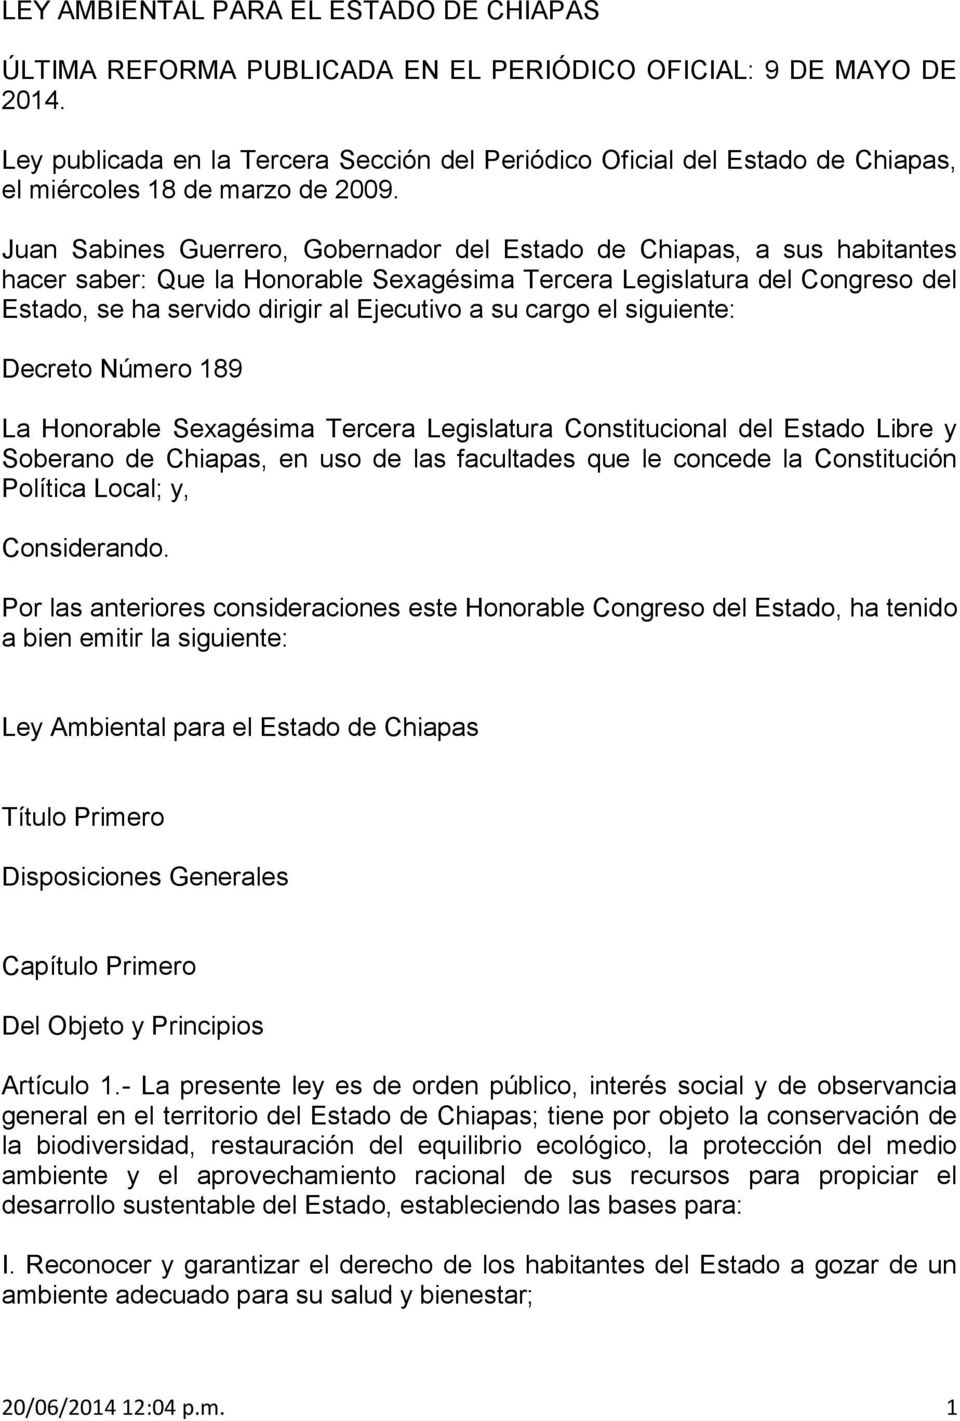 Juan Sabines Guerrero, Gobernador del Estado de Chiapas, a sus habitantes hacer saber: Que la Honorable Sexagésima Tercera Legislatura del Congreso del Estado, se ha servido dirigir al Ejecutivo a su